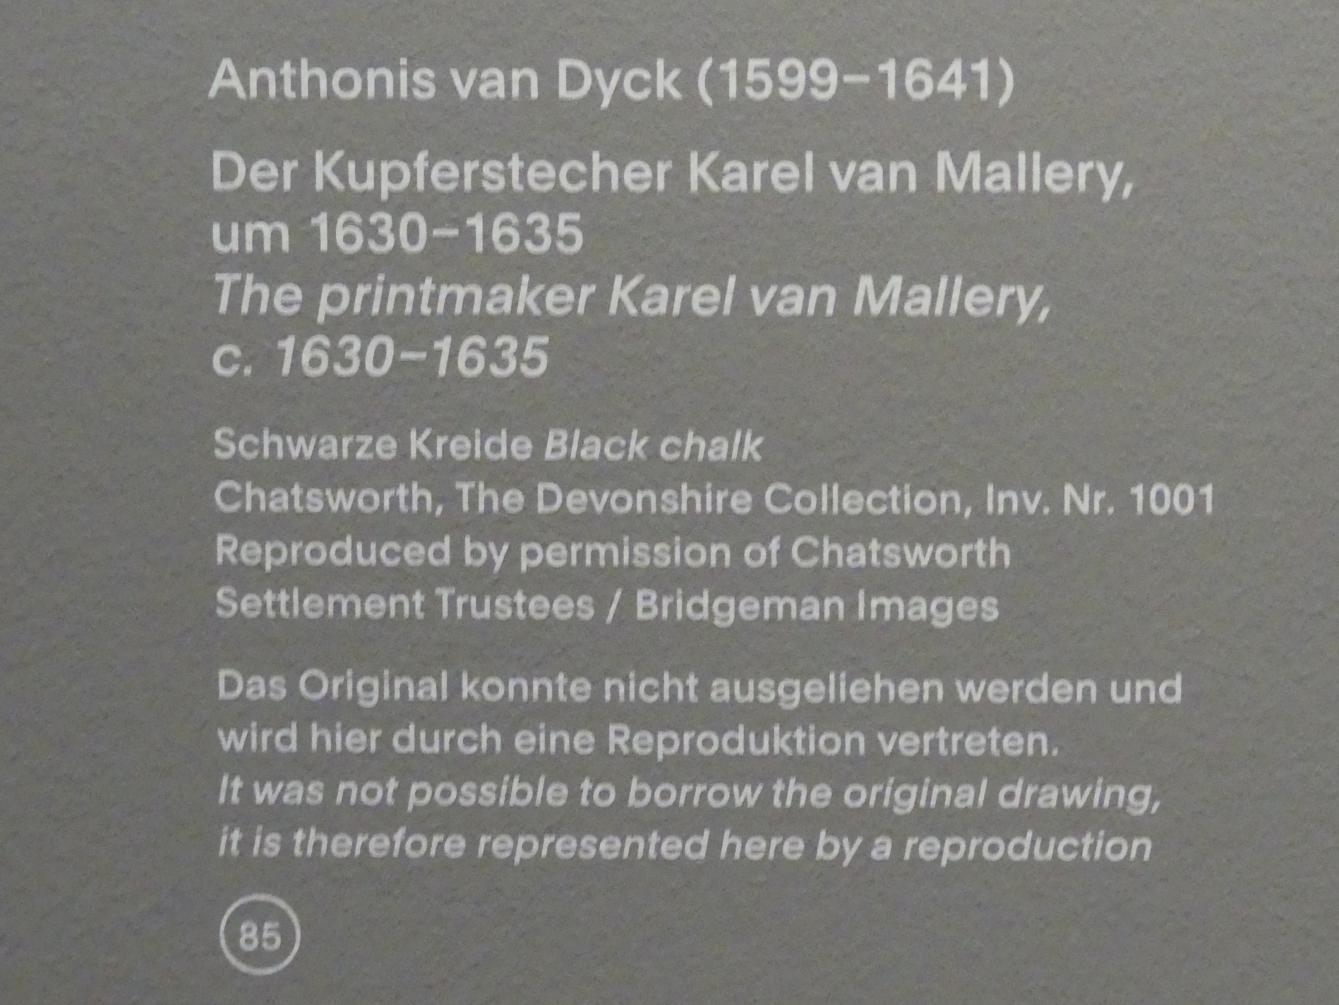 Anthonis (Anton) van Dyck (1614–1641), Der Kupferstecher Karel van Mallery, München, Alte Pinakothek, Ausstellung "Van Dyck" vom 25.10.2019-02.02.2020, Die "Ikonographie" - 1, um 1630–1635, Bild 2/2